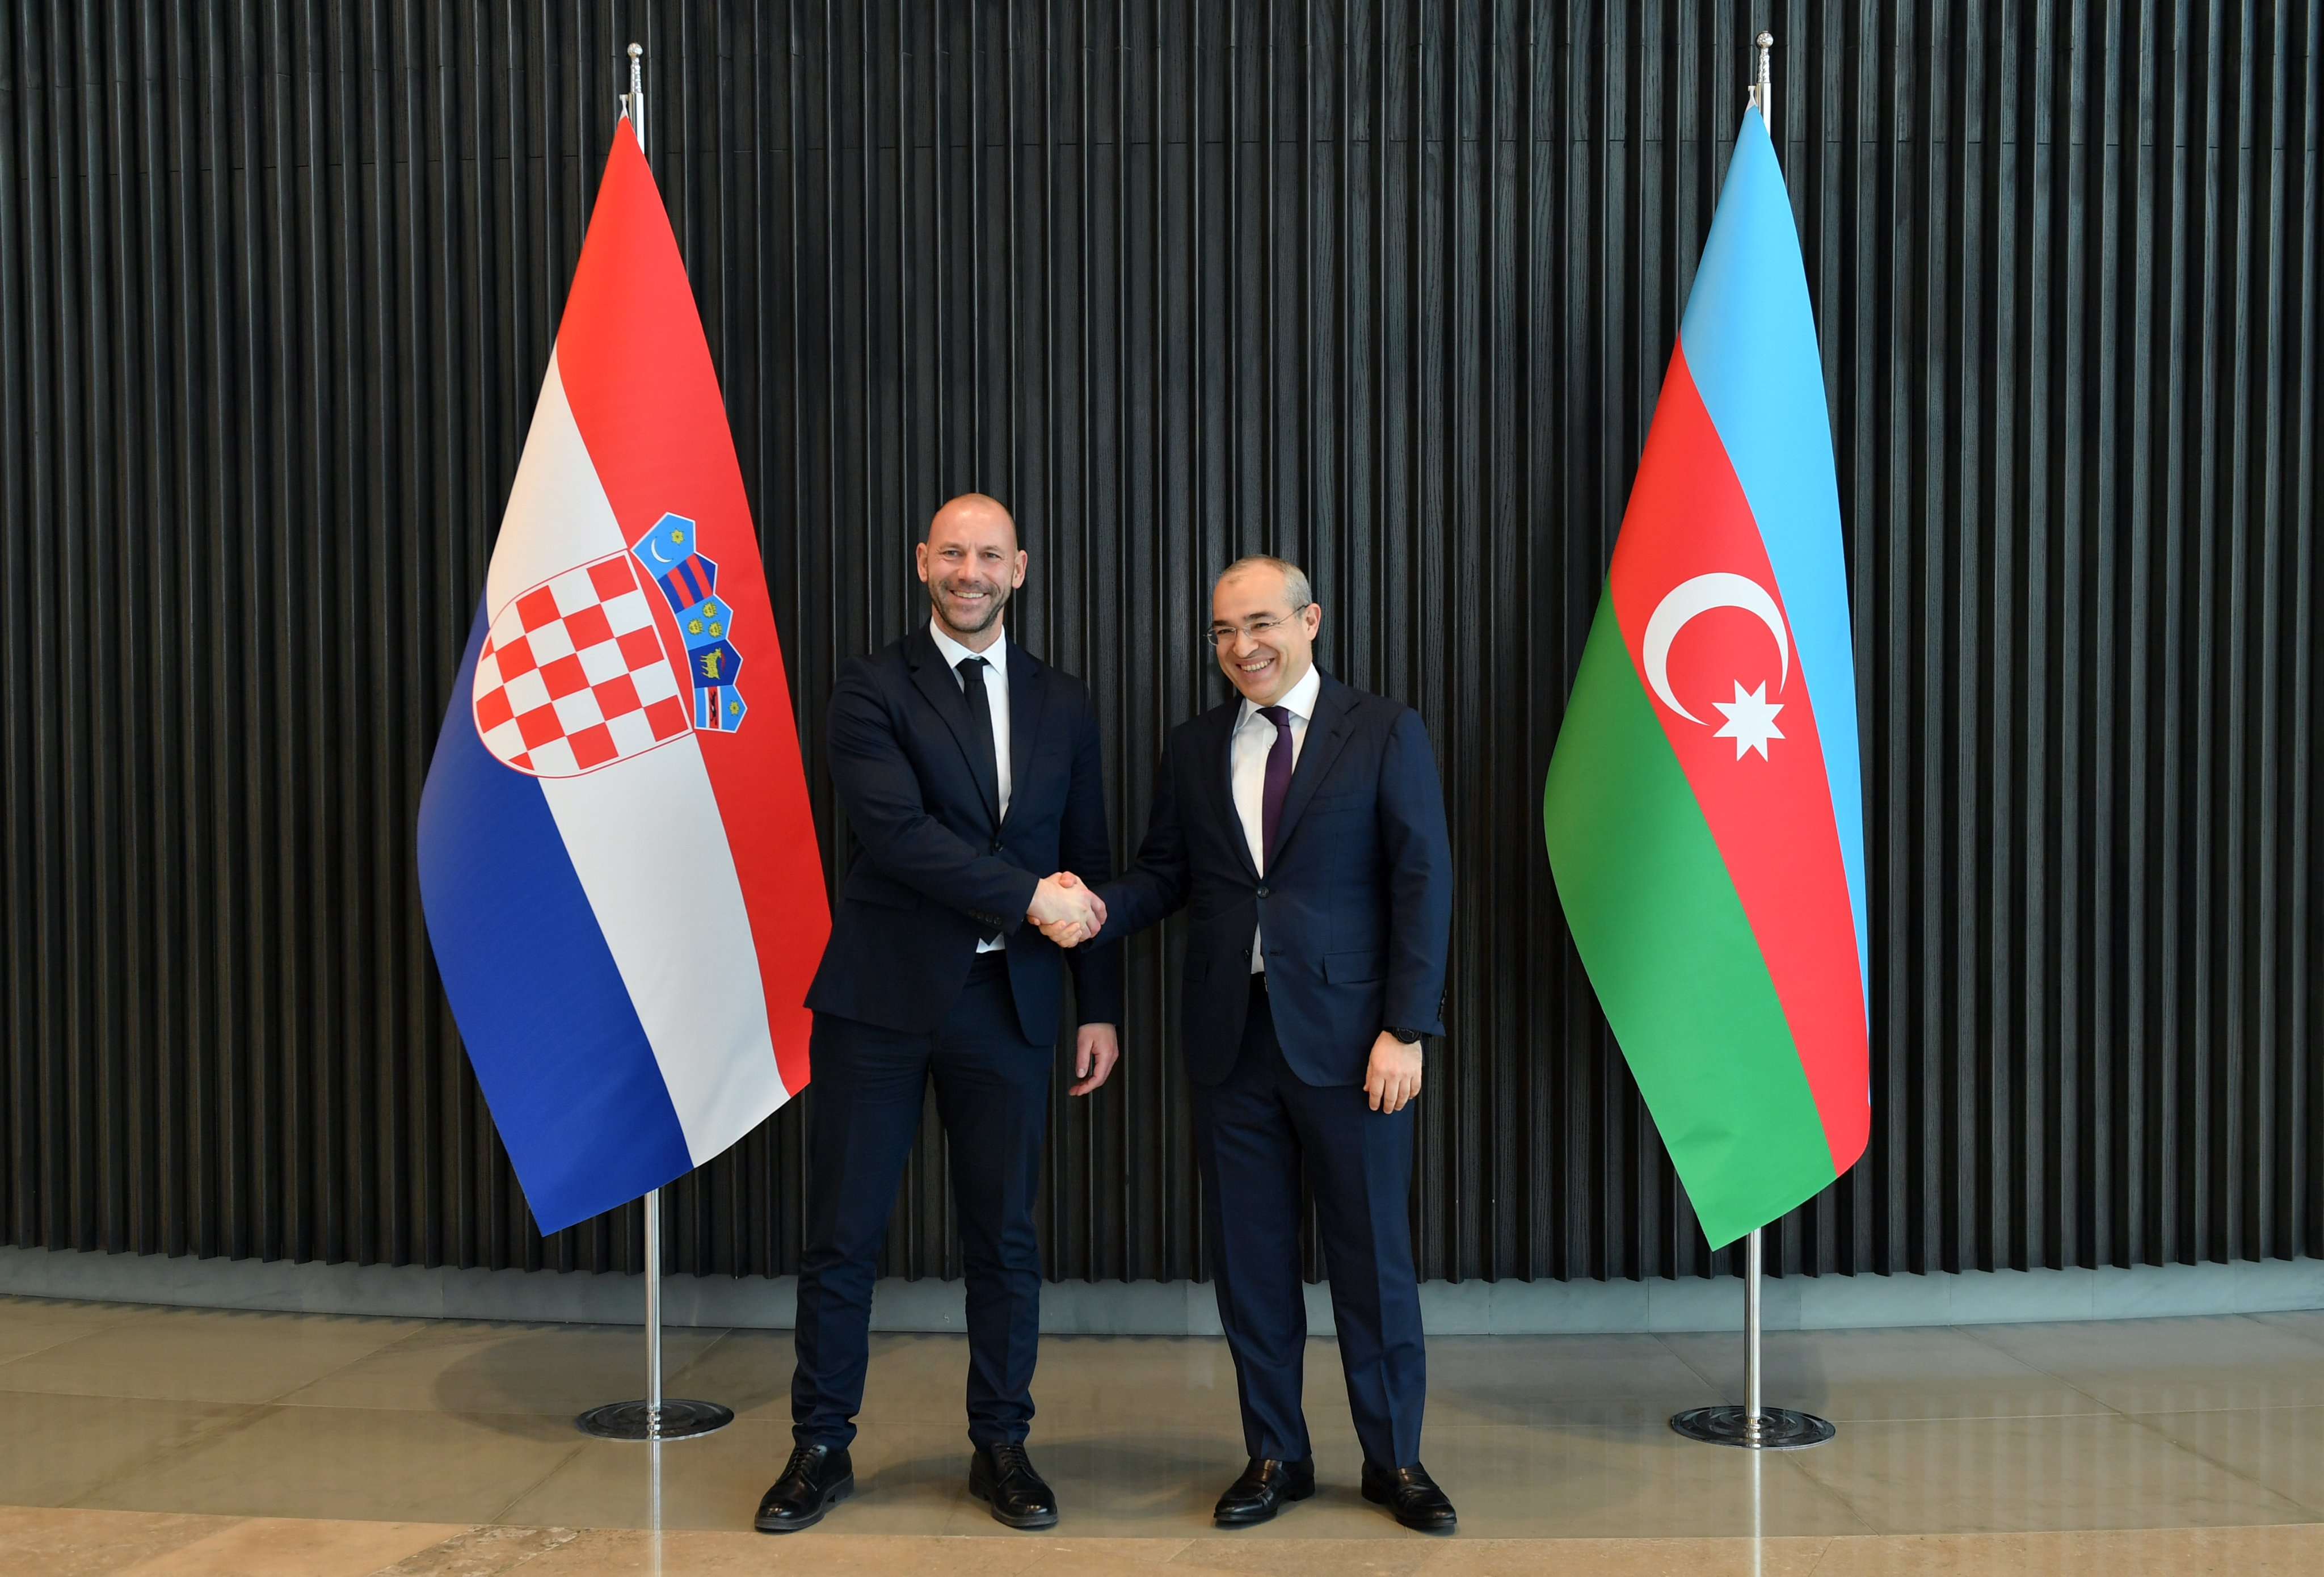 Обсуждены приоритеты экономического сотрудничества между Азербайджаном и Хорватией - ФОТО